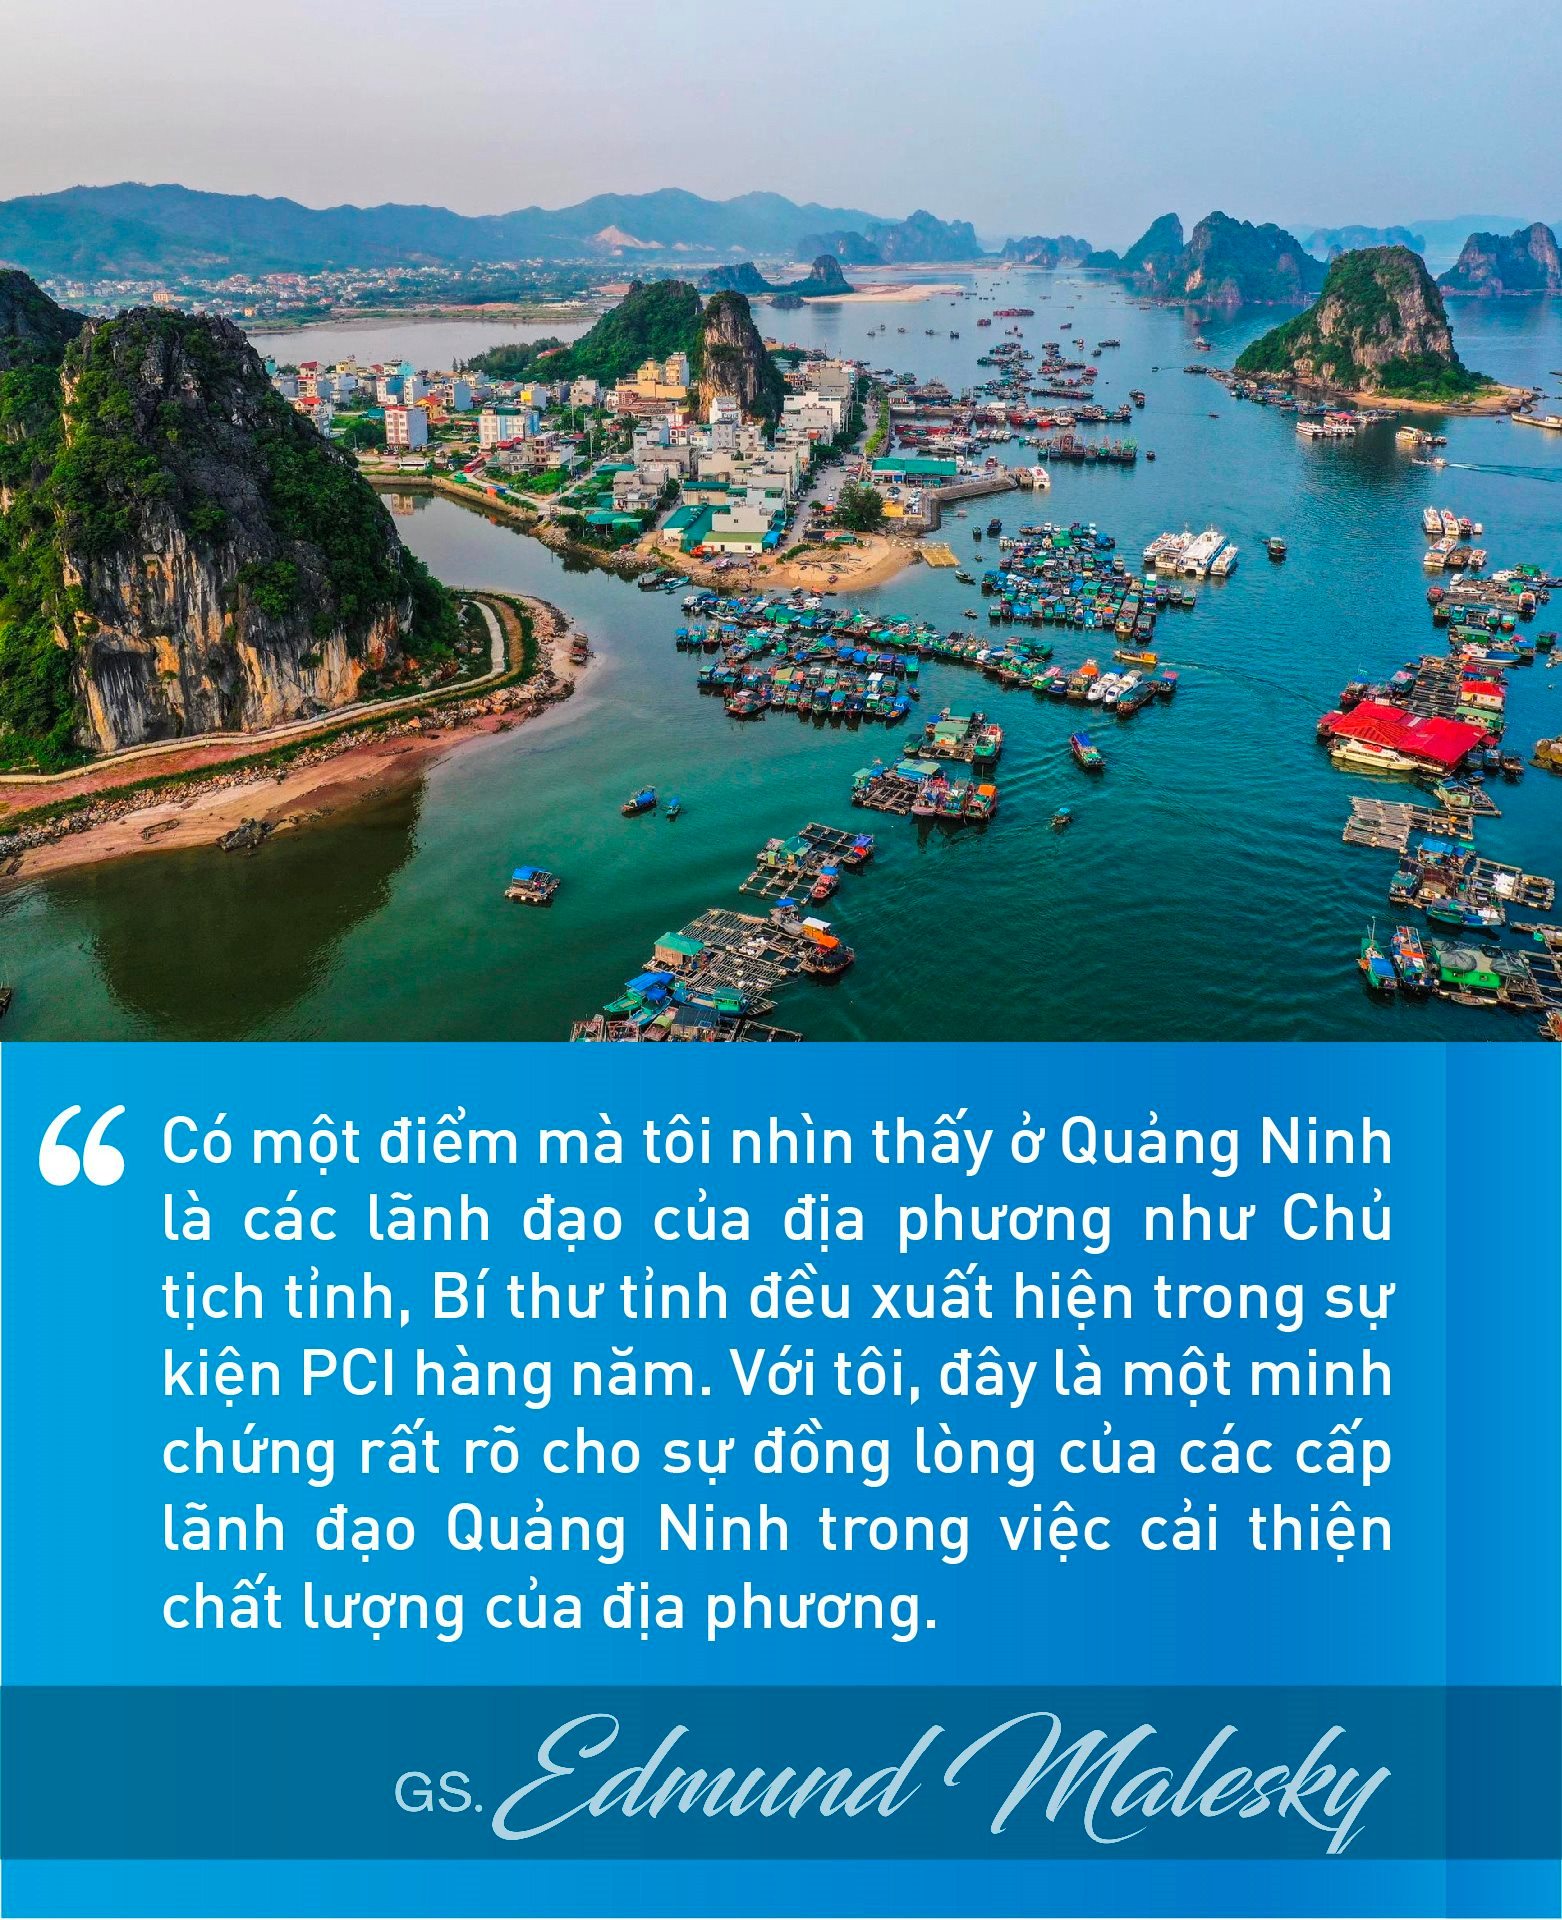 Trưởng nhóm nghiên cứu PCI cấp tỉnh Việt Nam tiết lộ những địa phương được xem là hình mẫu của cải cách thể chế - Ảnh 2.